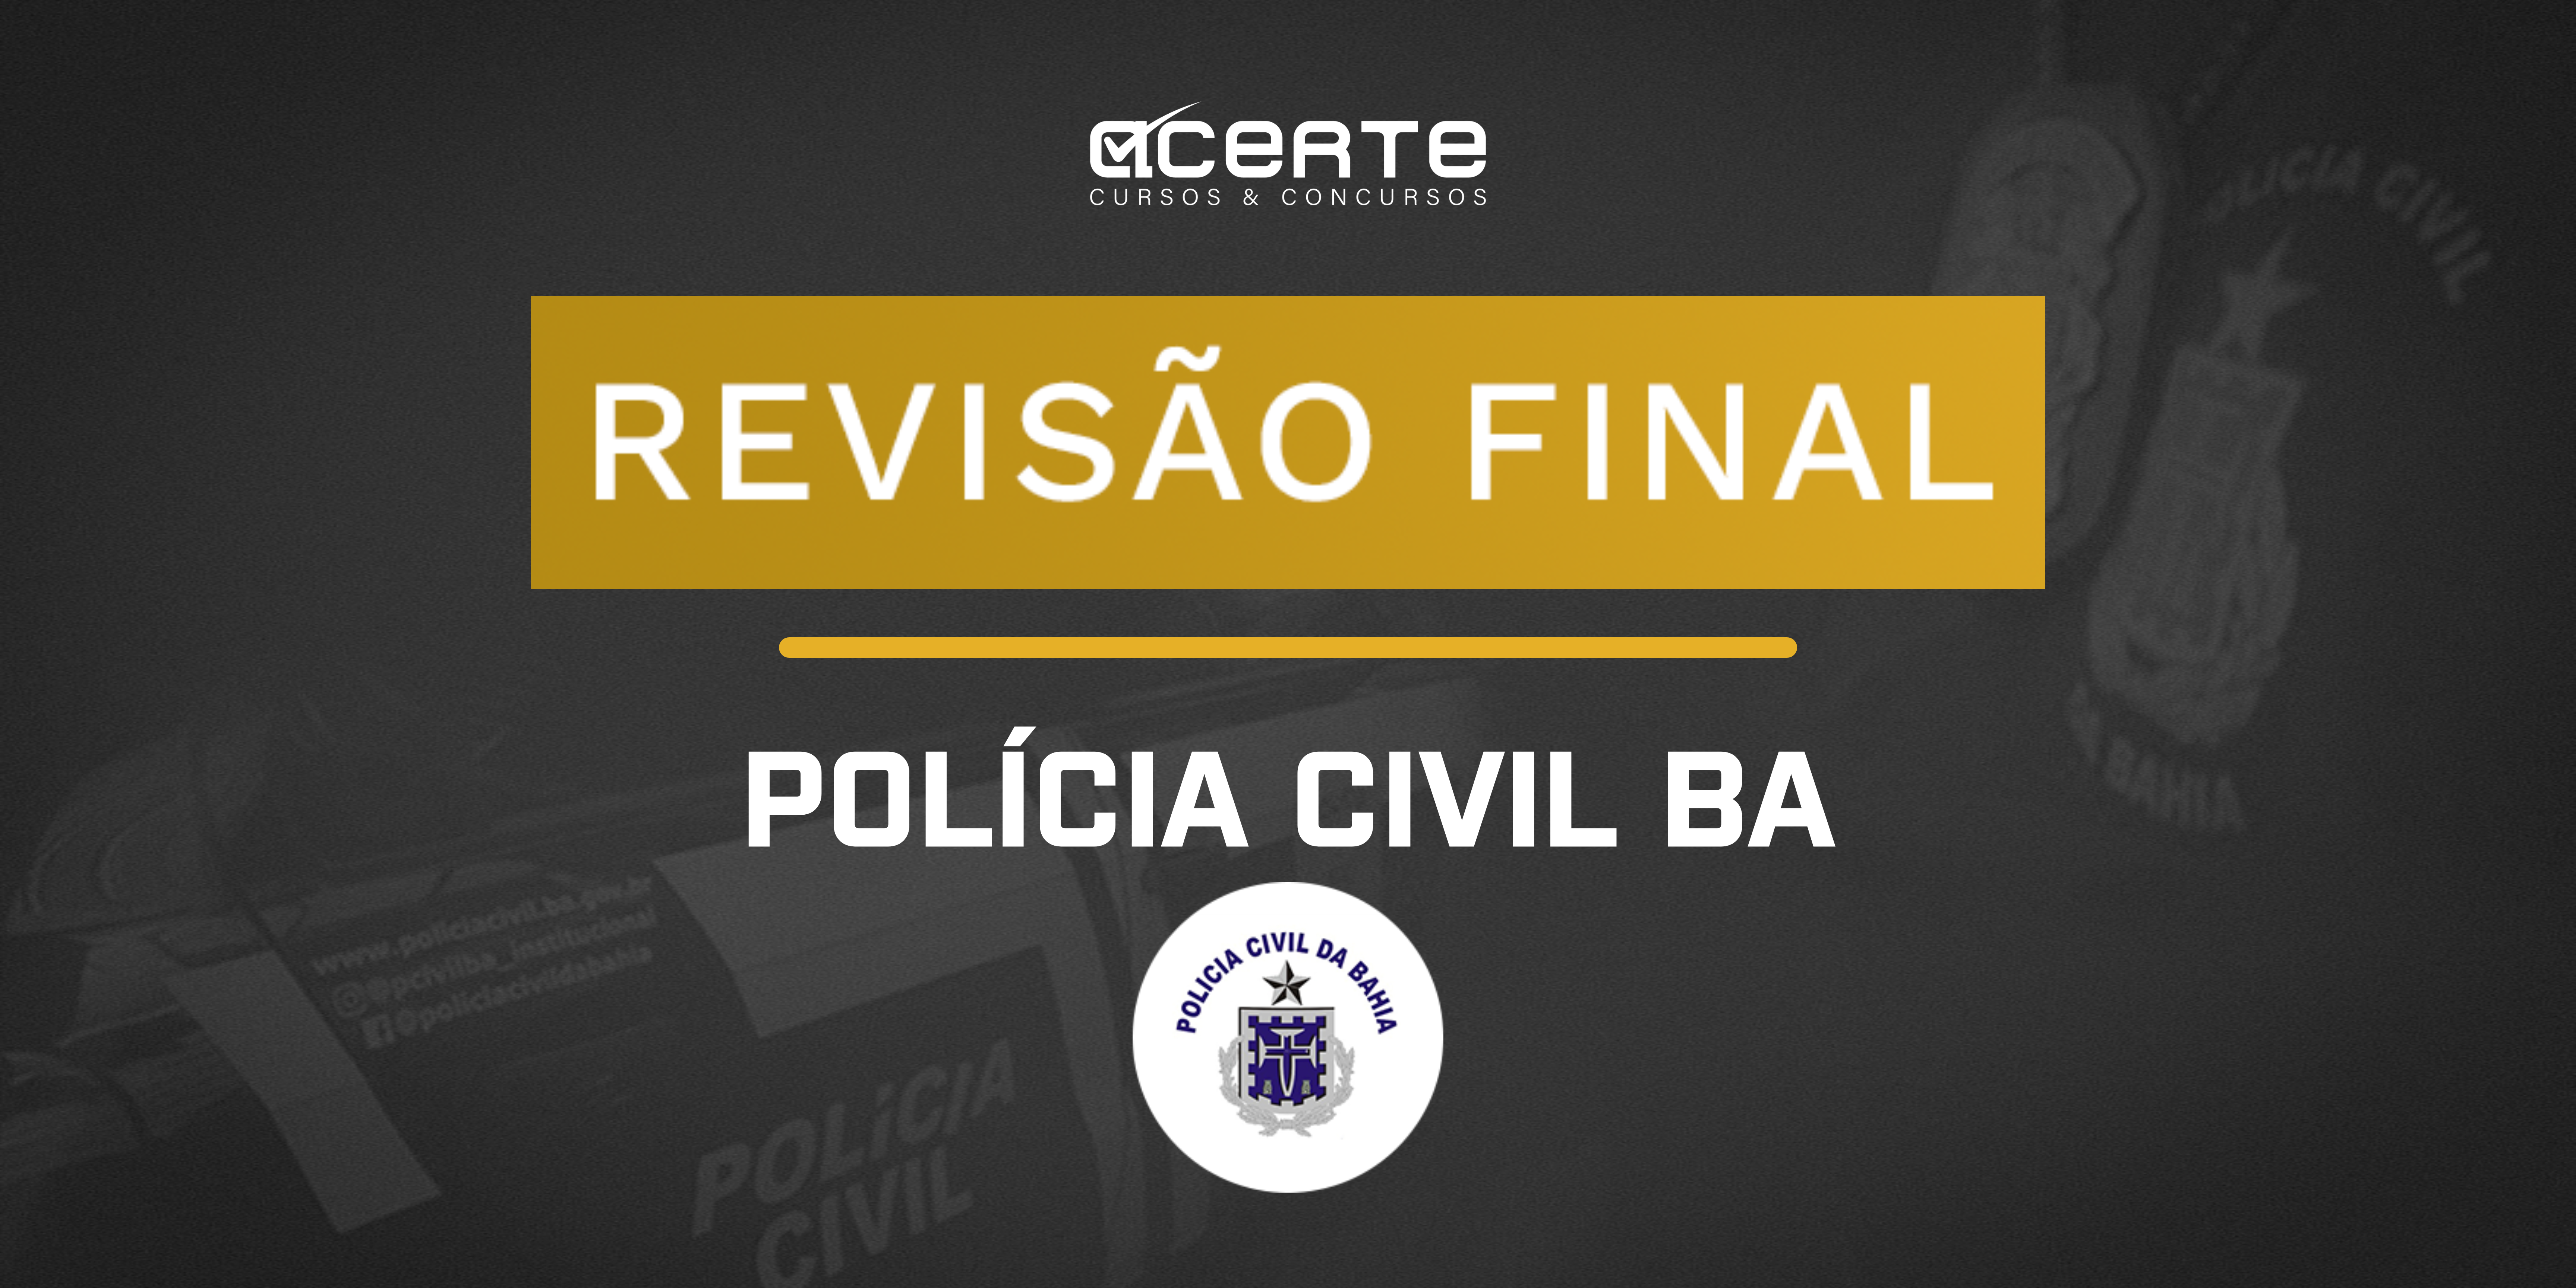 Polícia Civil da Bahia - Revisão Final - Presencial